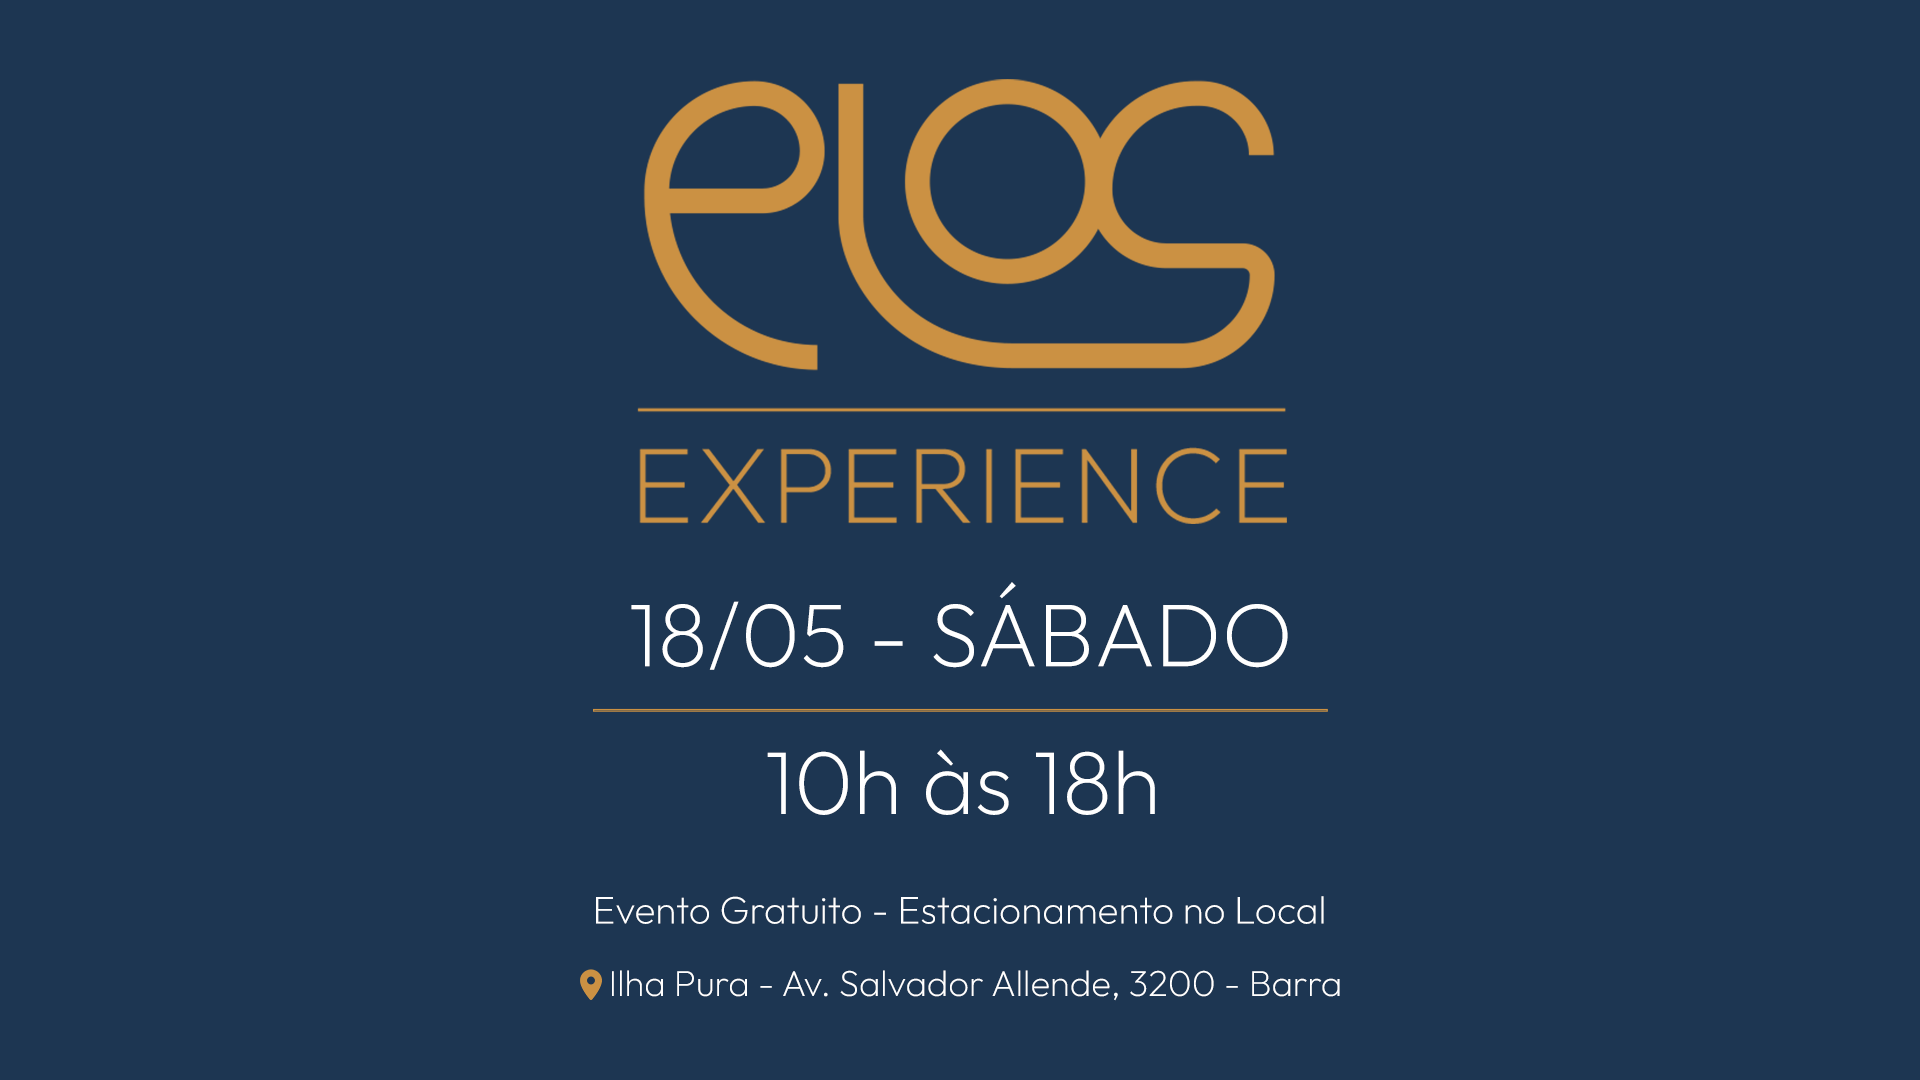 Elos Experience na Ilha Pura: decorado inteligente, ações de bem-estar, gastronomia e test drive